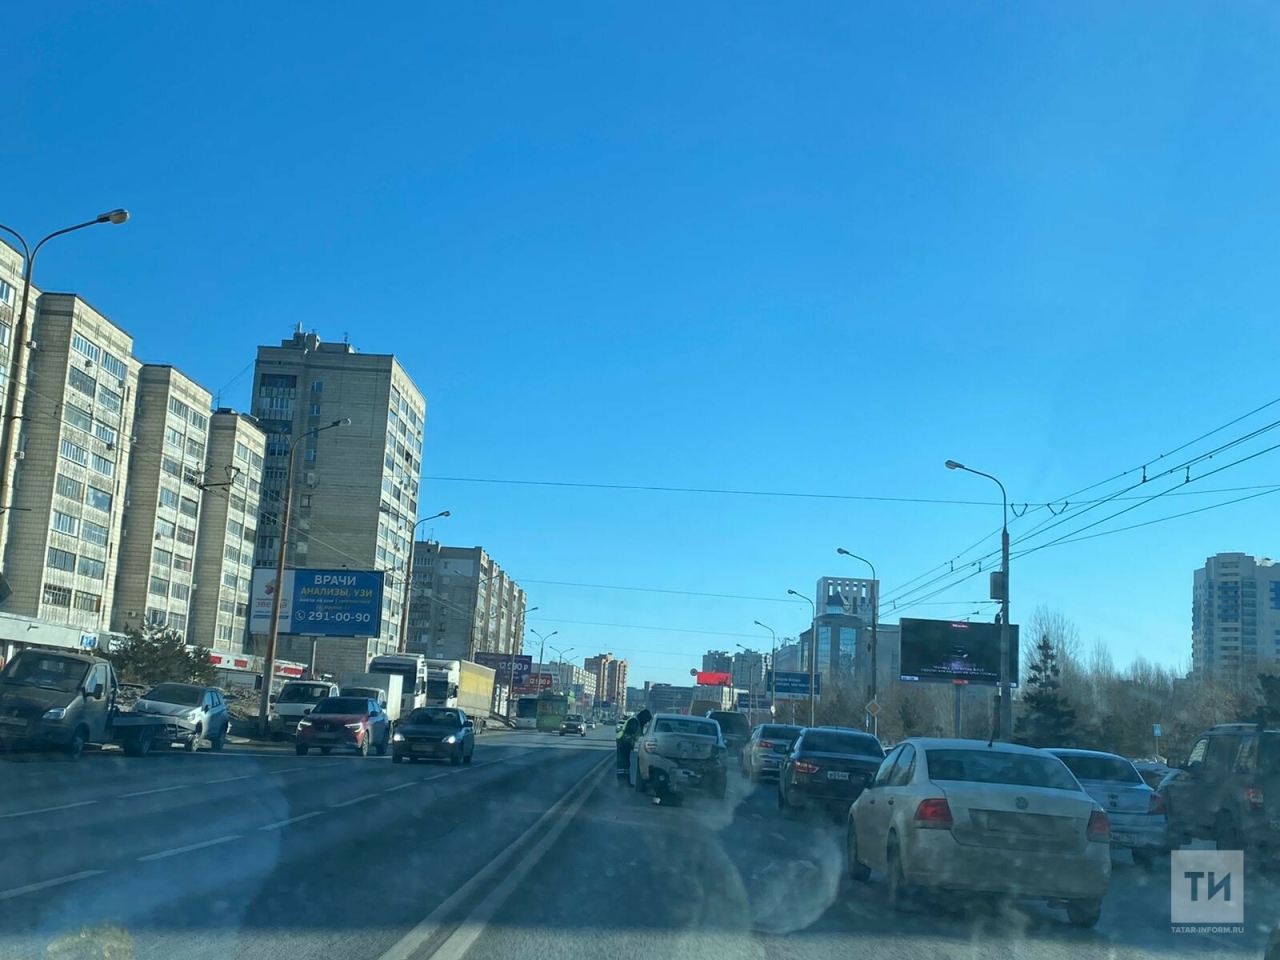 Две легковушки столкнулись у METRO в Казани, одного из водителей увезли в больницу